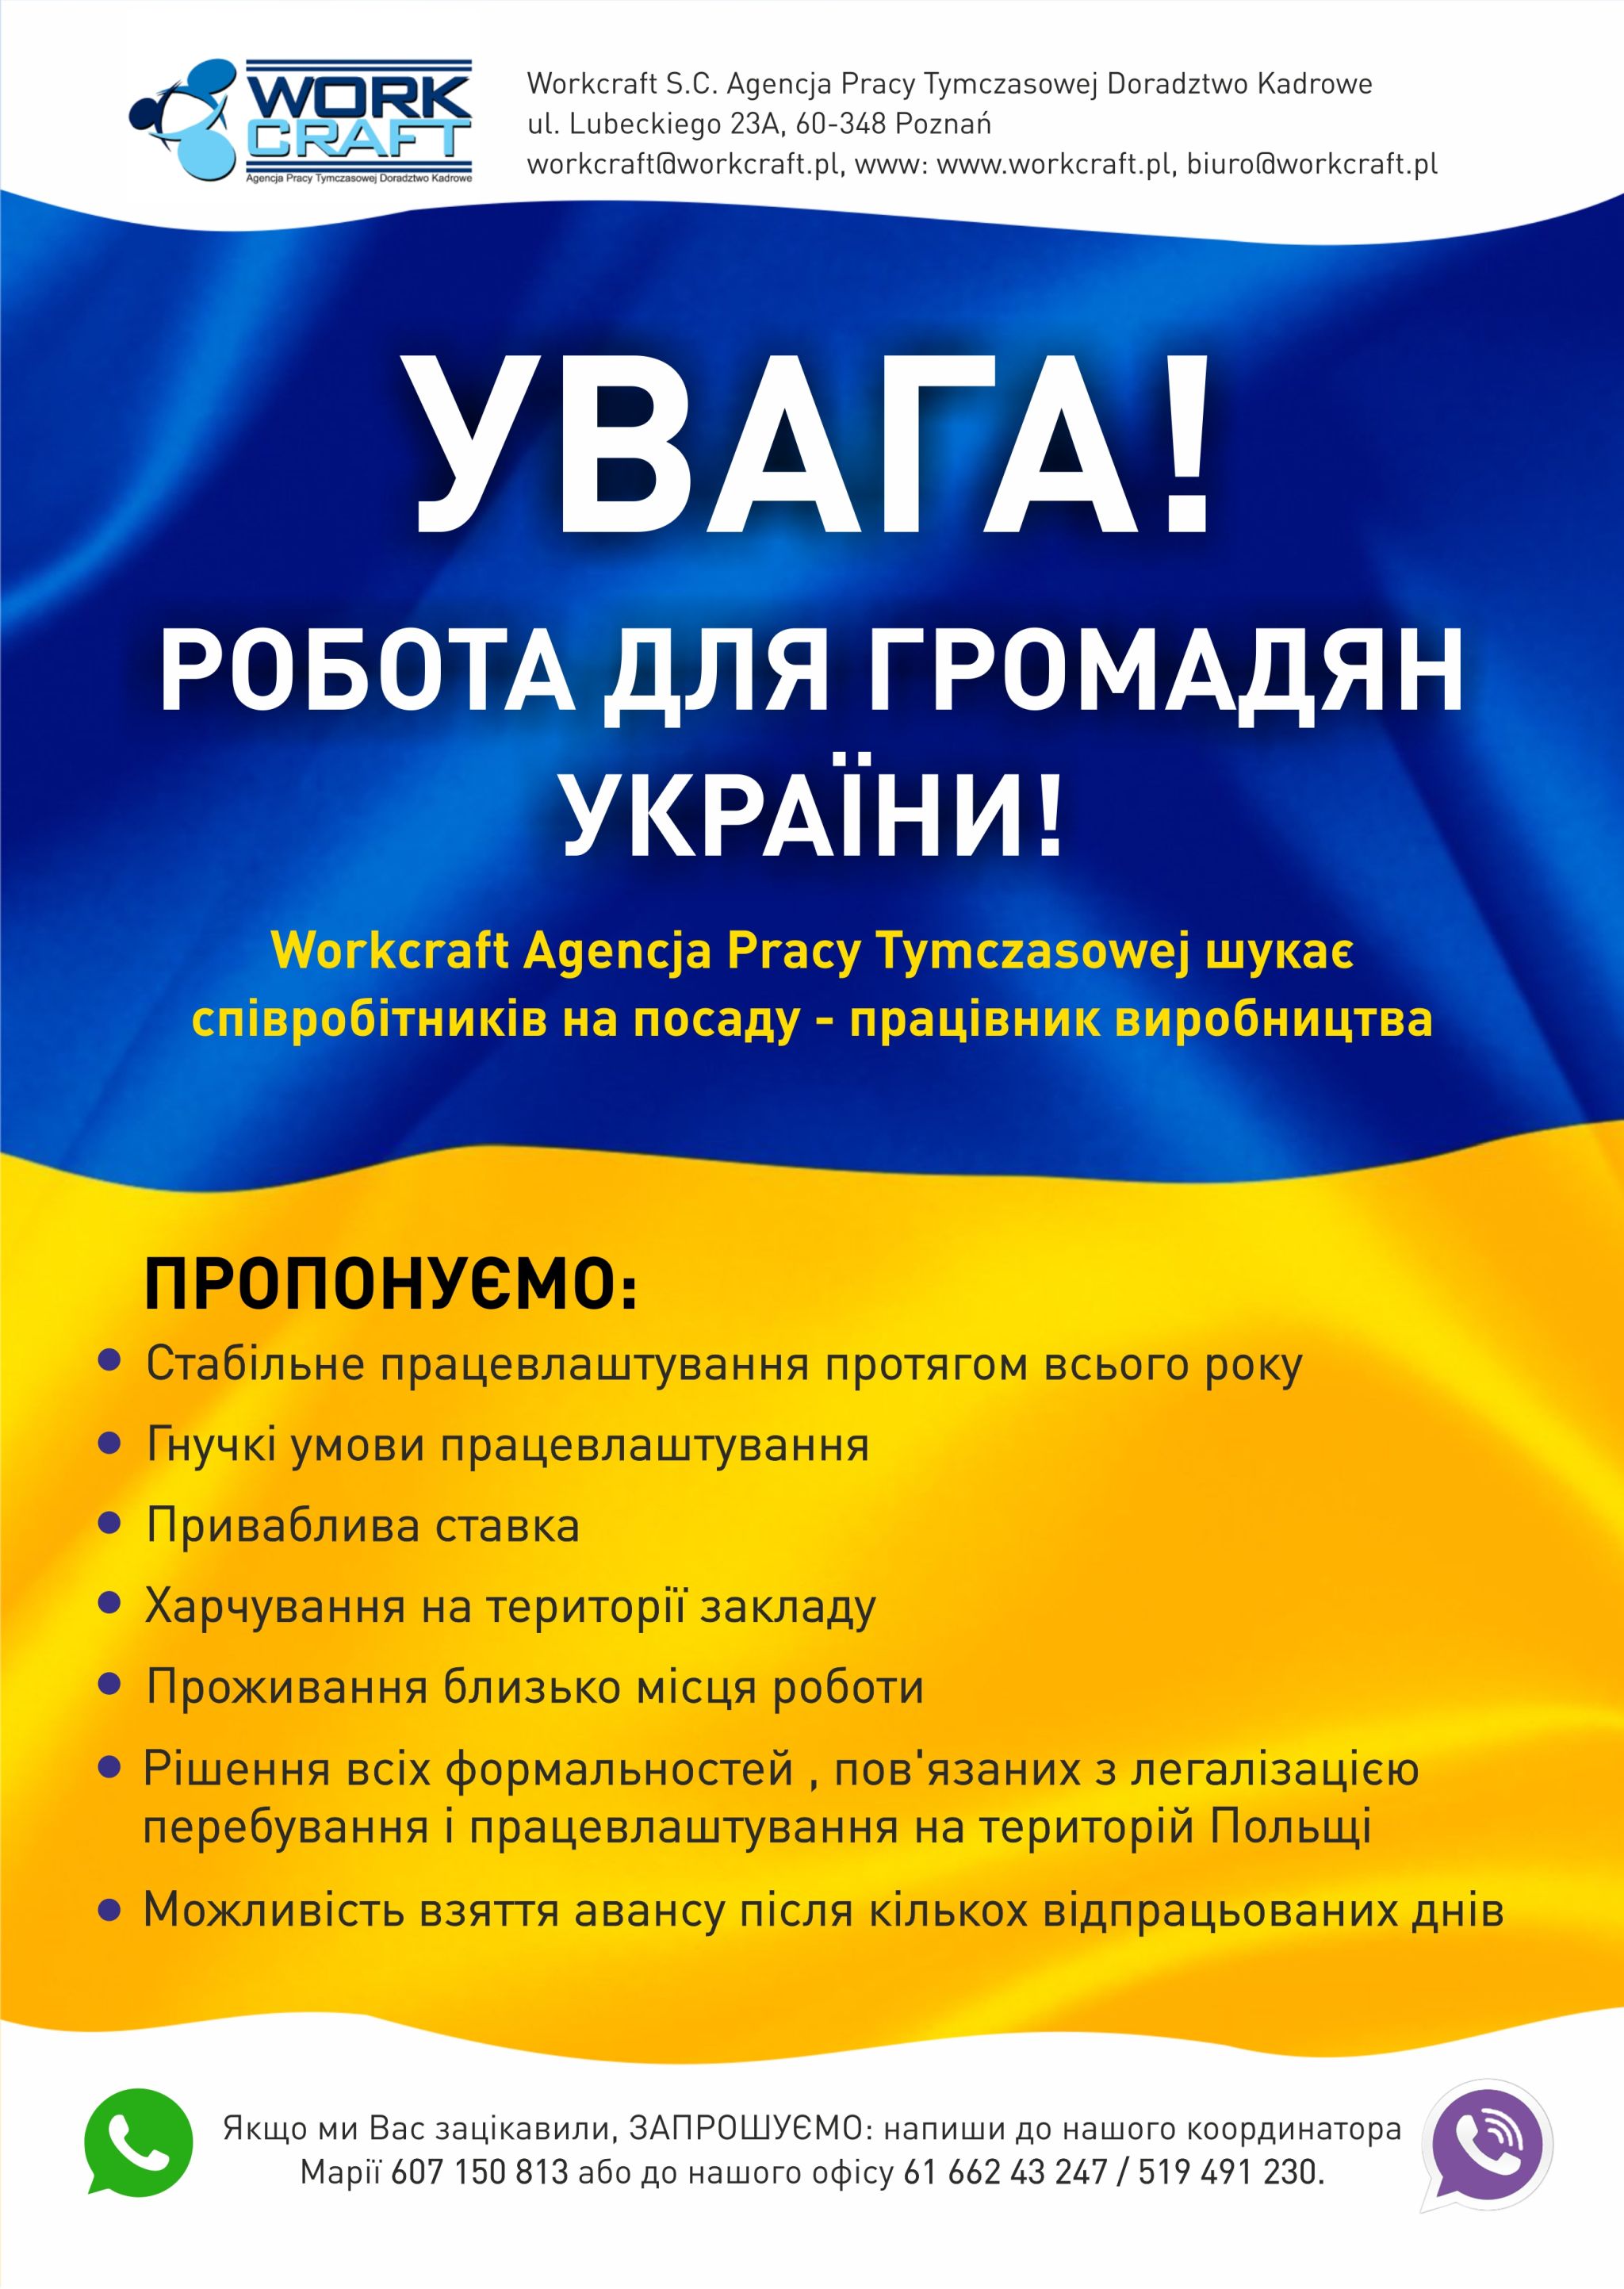 Workcraft Agencja Pracy Tymczasowej oferuje pracę dla osób z Ukrainy.